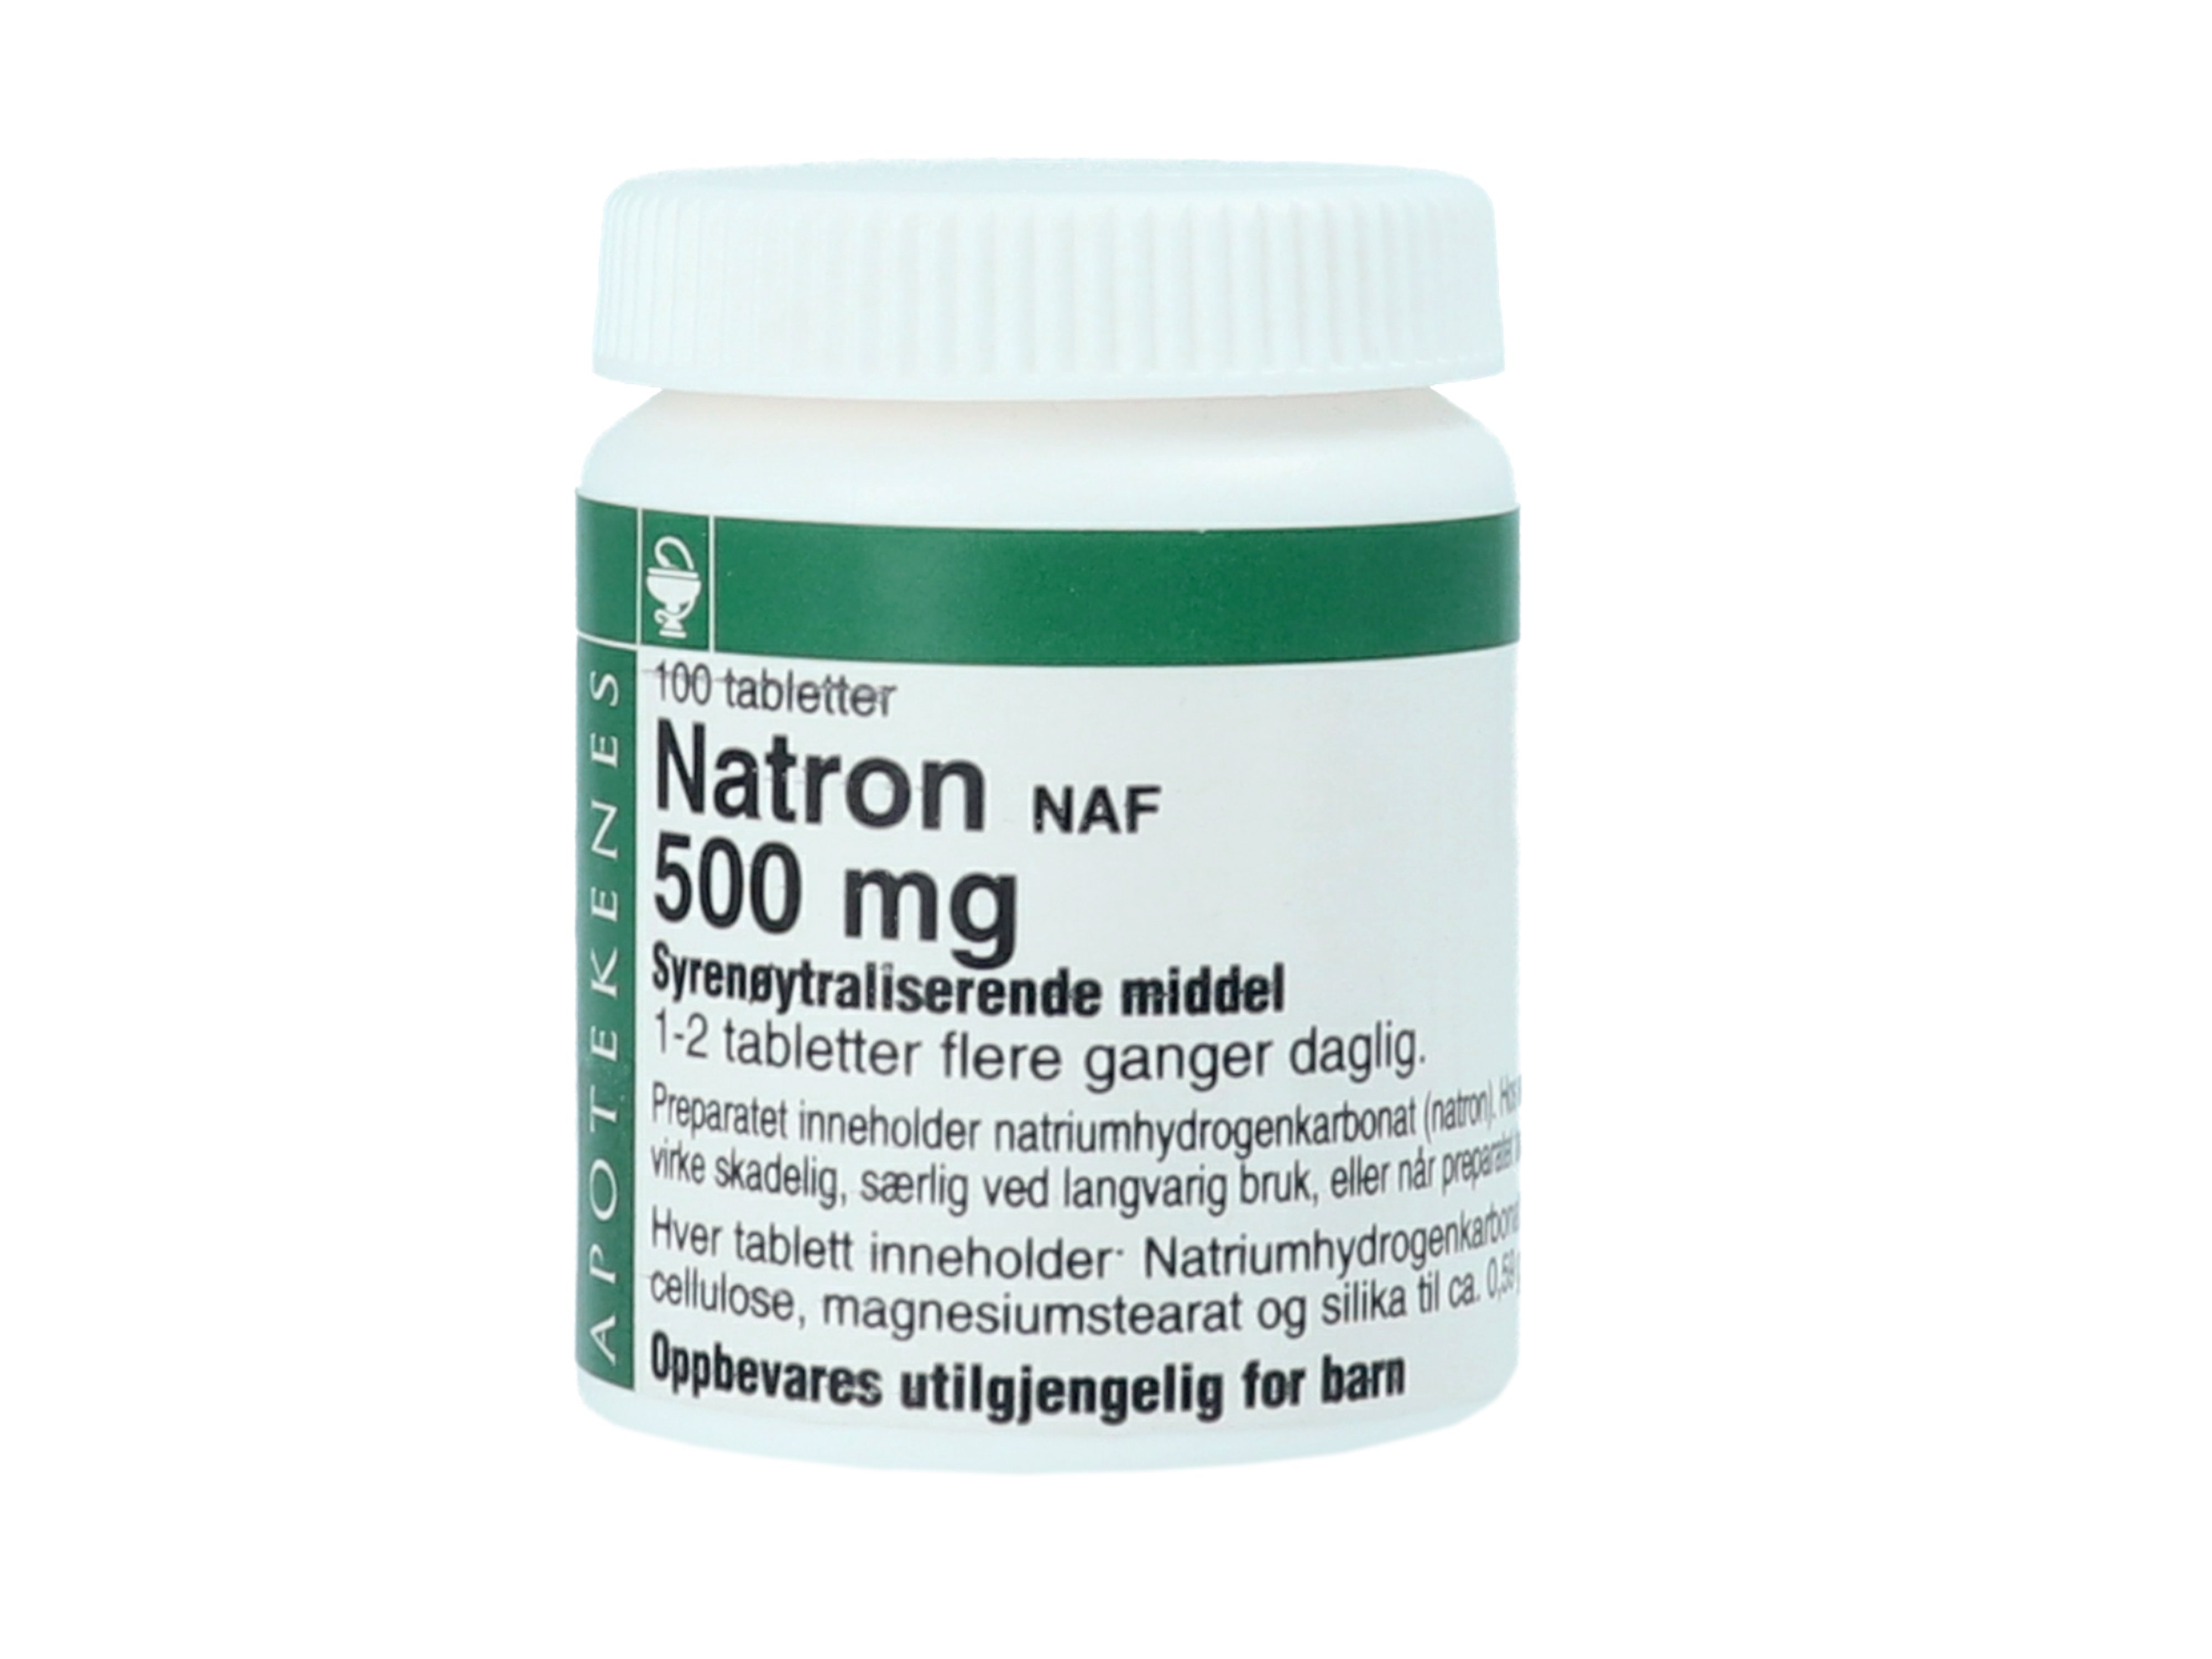 NAF Natron NAF 500 mg tabletter, 100 stk.